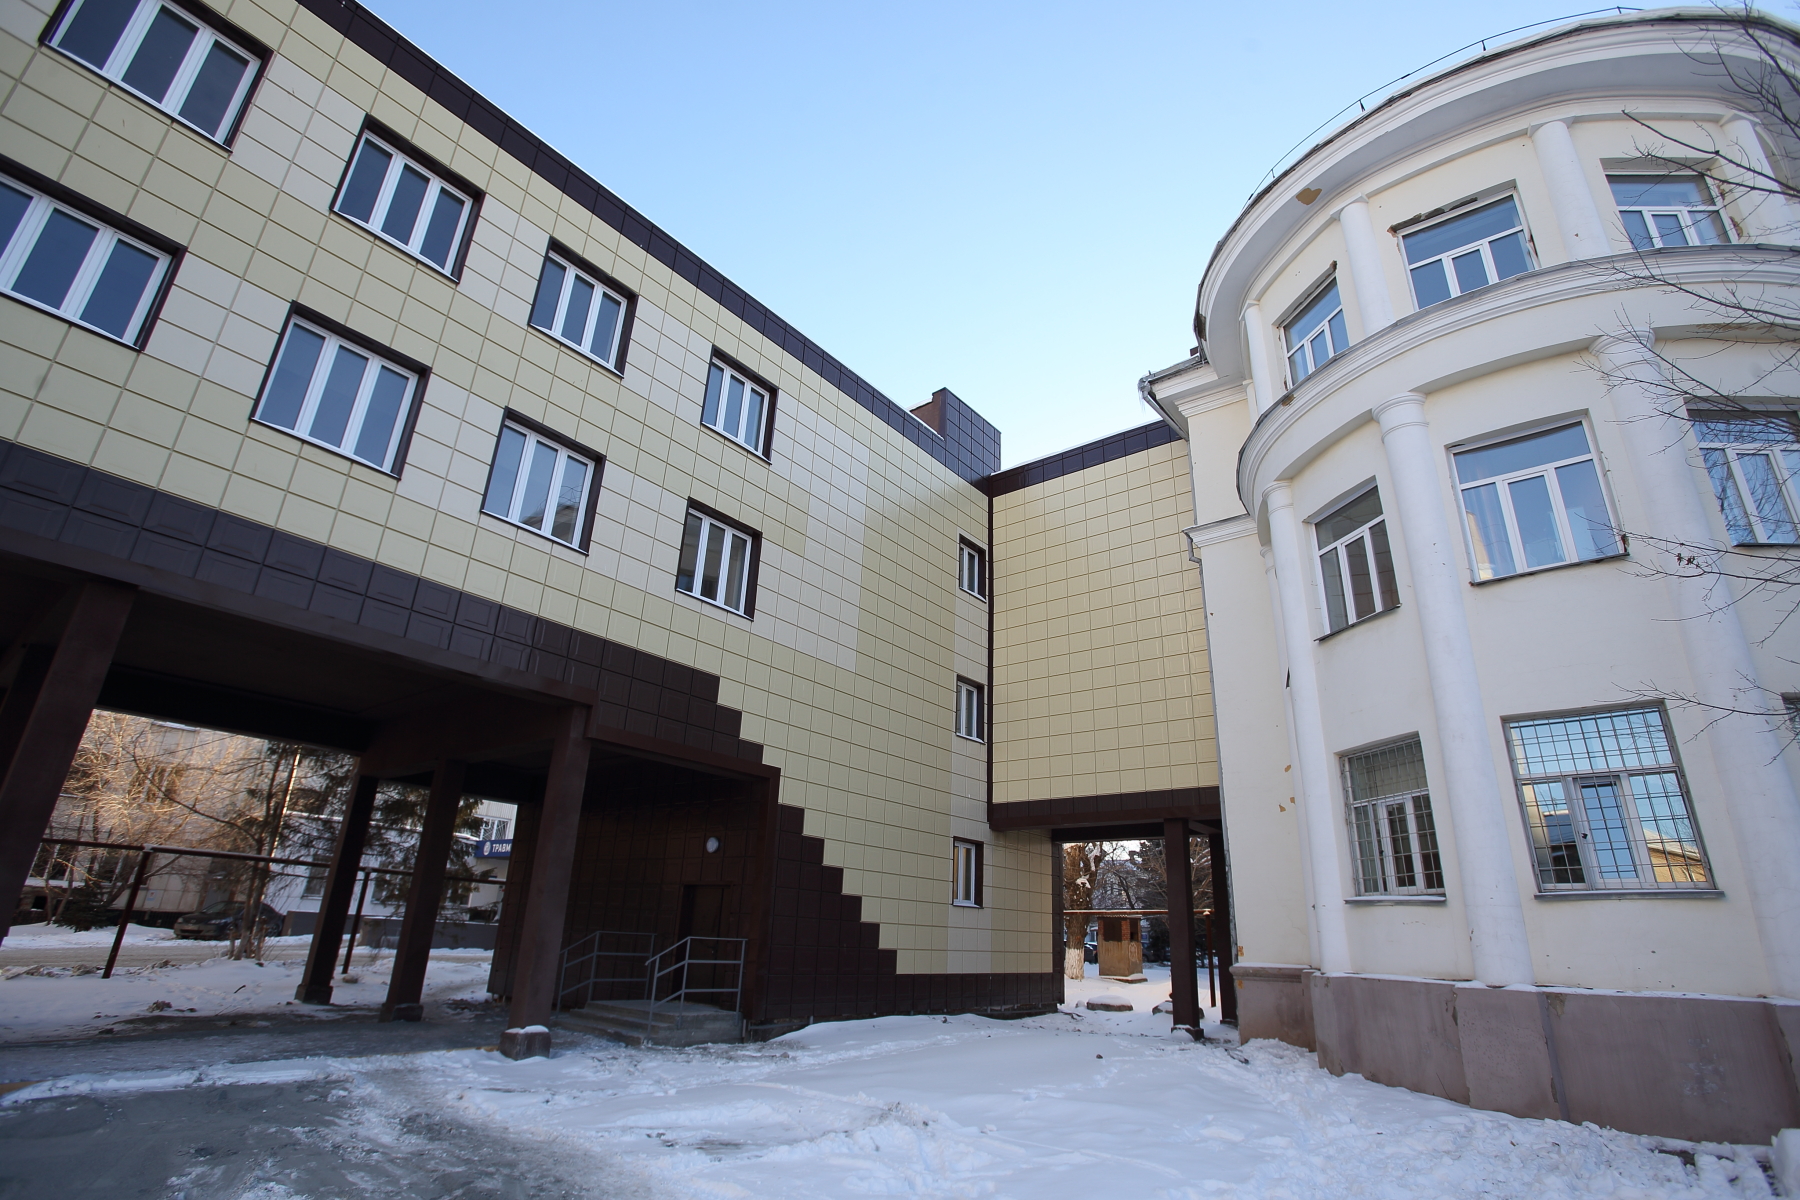 Городская клиническая больница номер 1 в Челябинске теперь имеет теплый переход для удобства как пациентов, так и персонала